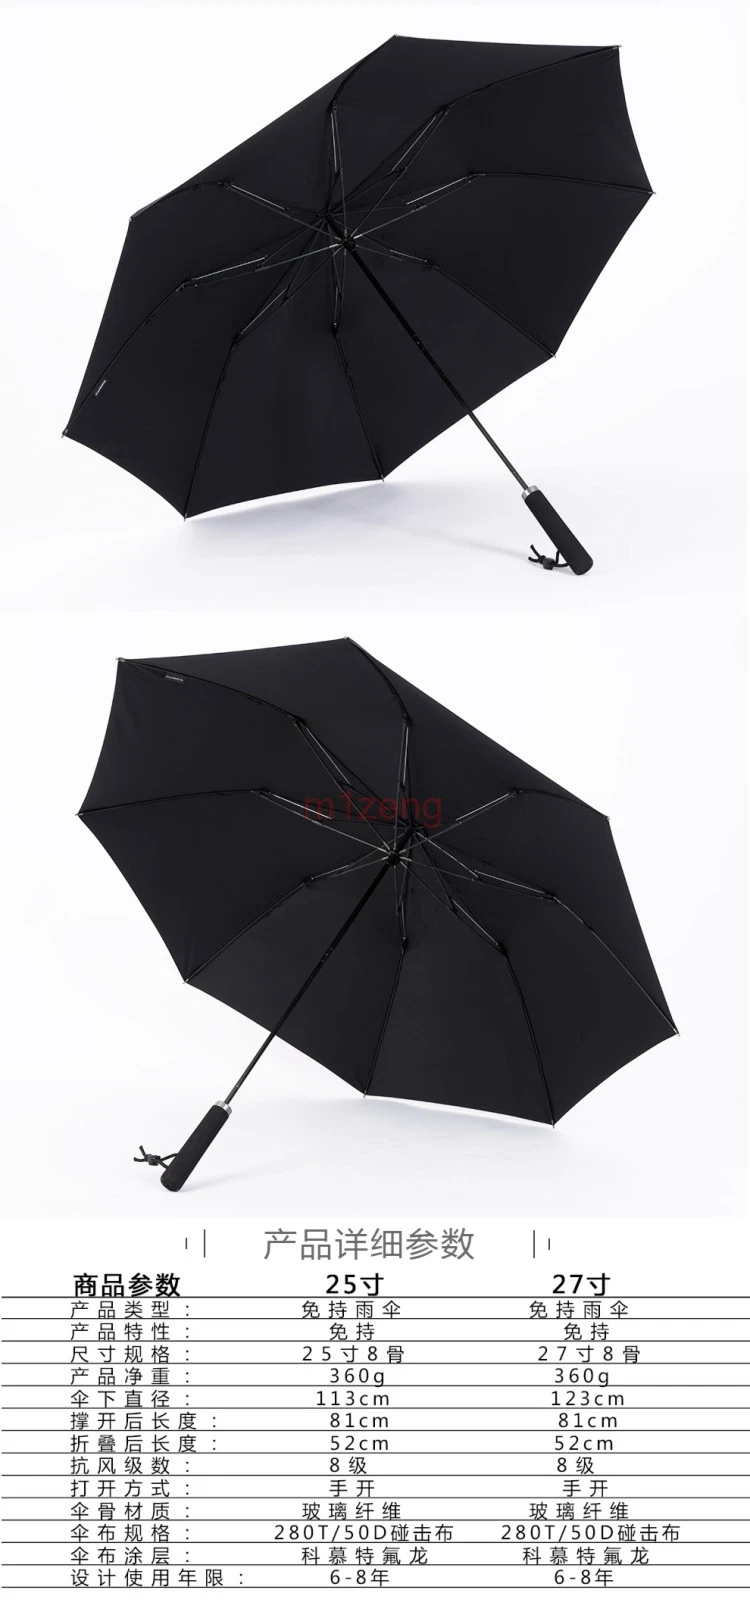 113 см/2" Открытый свободные руки складной зонтик дождевик протектор для canon nikon sony pentax fuji dslr камера Студия